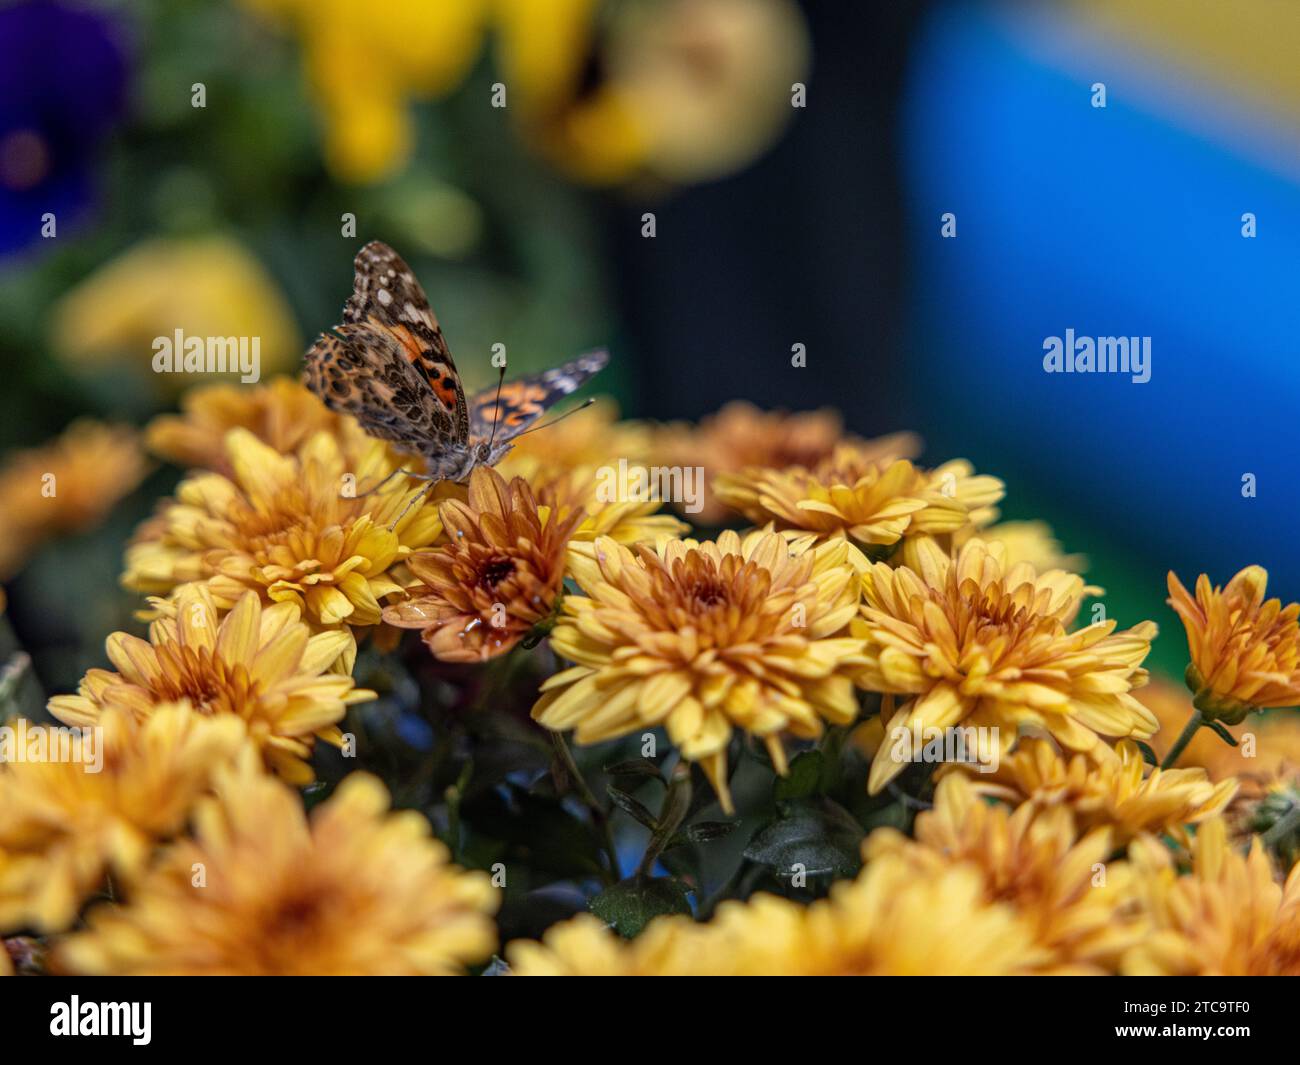 Eine Makroaufnahme eines Schmetterlings auf einem lebendigen Blumendisplay in einer üppigen Umgebung im Freien Stockfoto